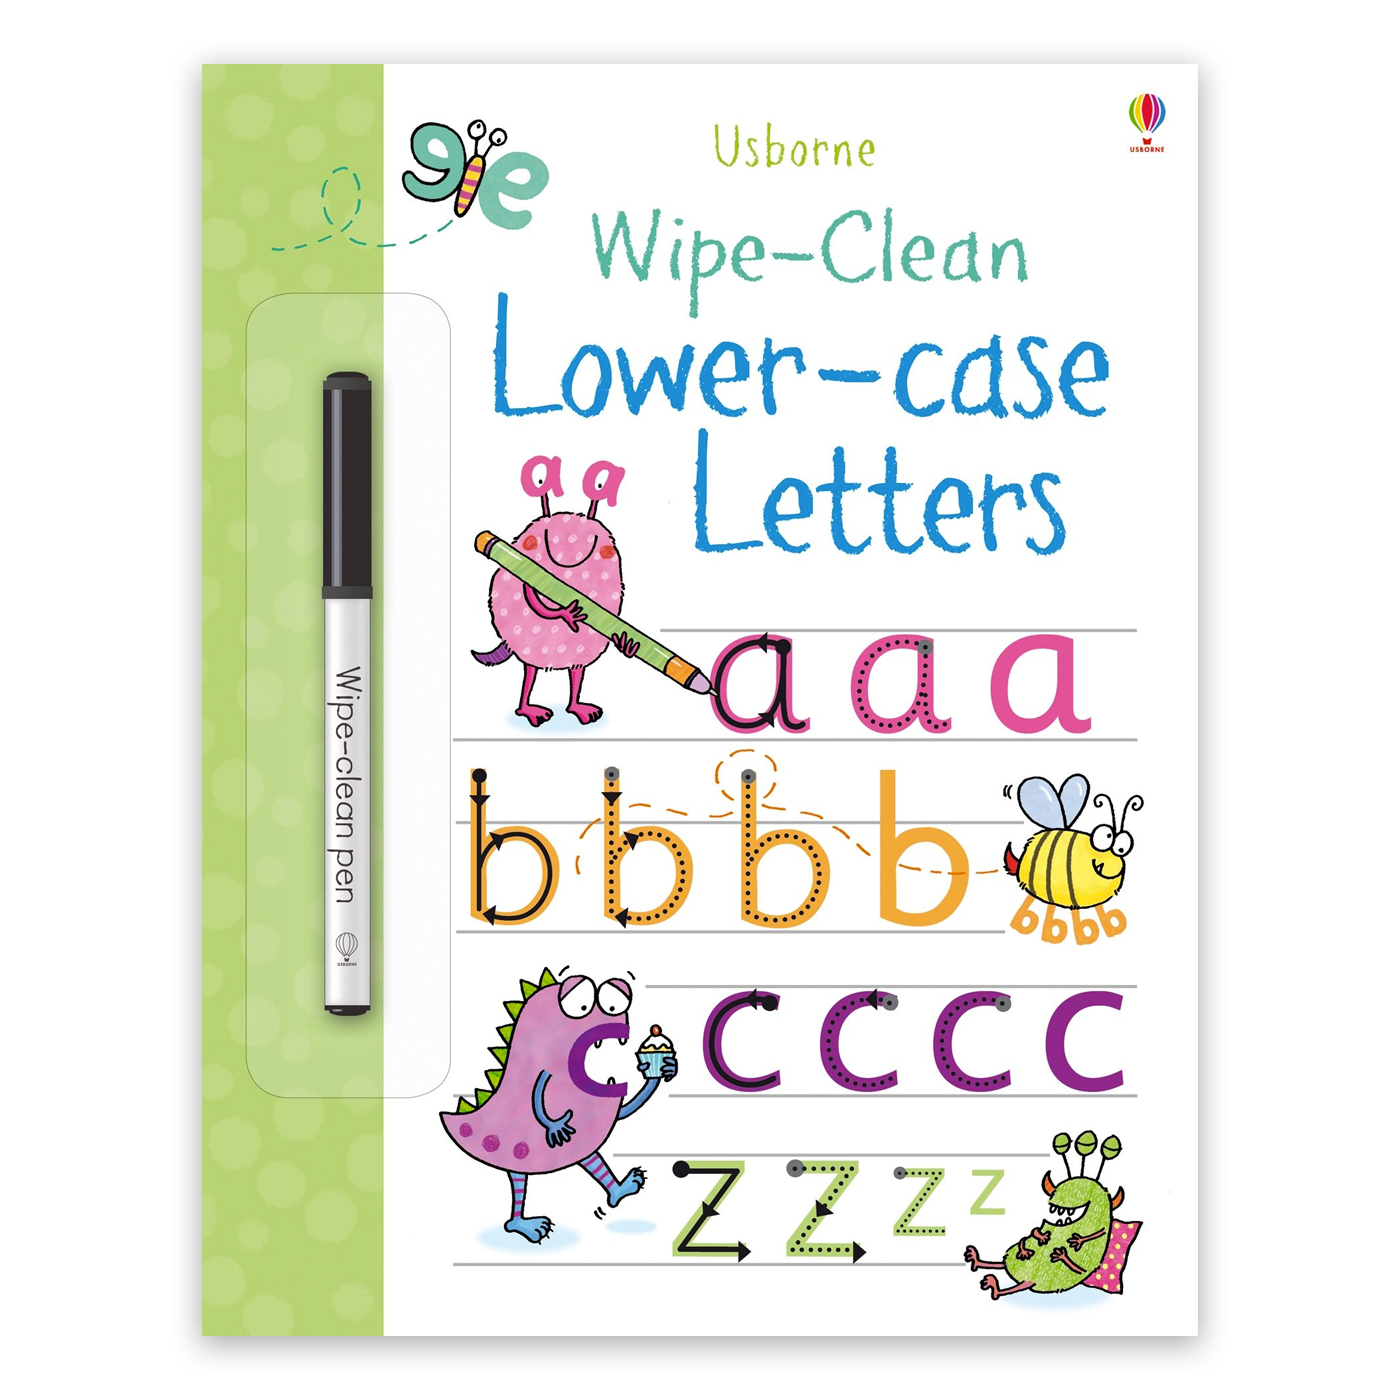  Wipe-Clean Lower-case Letters